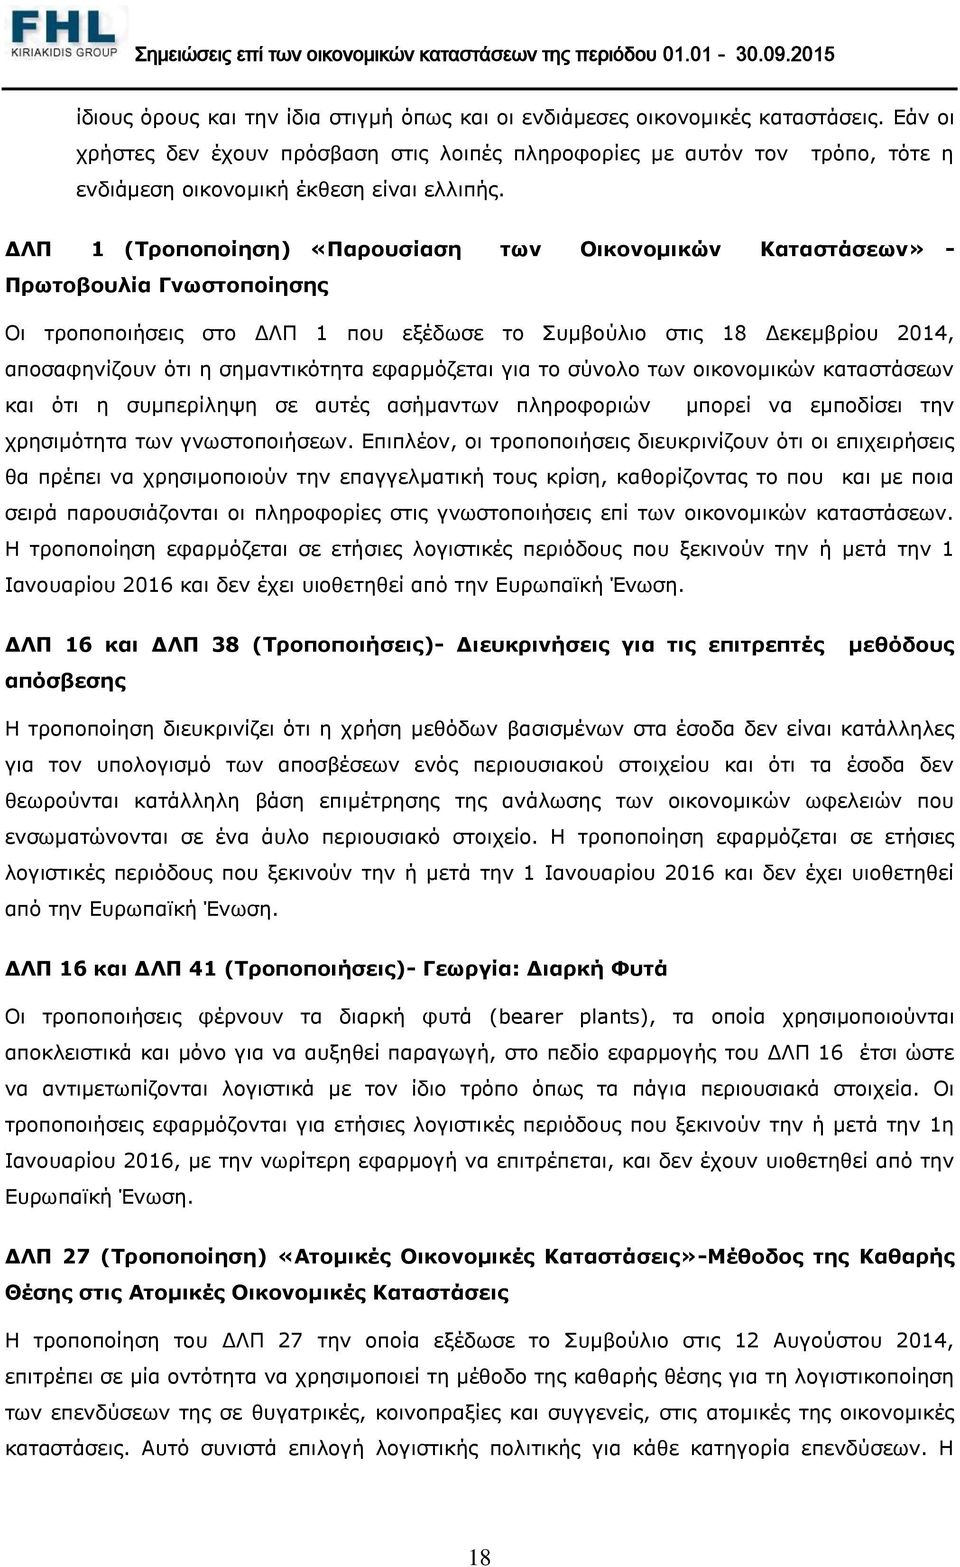 ΔΛΠ 1 (Τροποποίηση) «Παρουσίαση των Οικονομικών Καταστάσεων» - Πρωτοβουλία Γνωστοποίησης Οι τροποποιήσεις στο ΔΛΠ 1 που εξέδωσε το Συμβούλιο στις 18 Δεκεμβρίου 2014, αποσαφηνίζουν ότι η σημαντικότητα